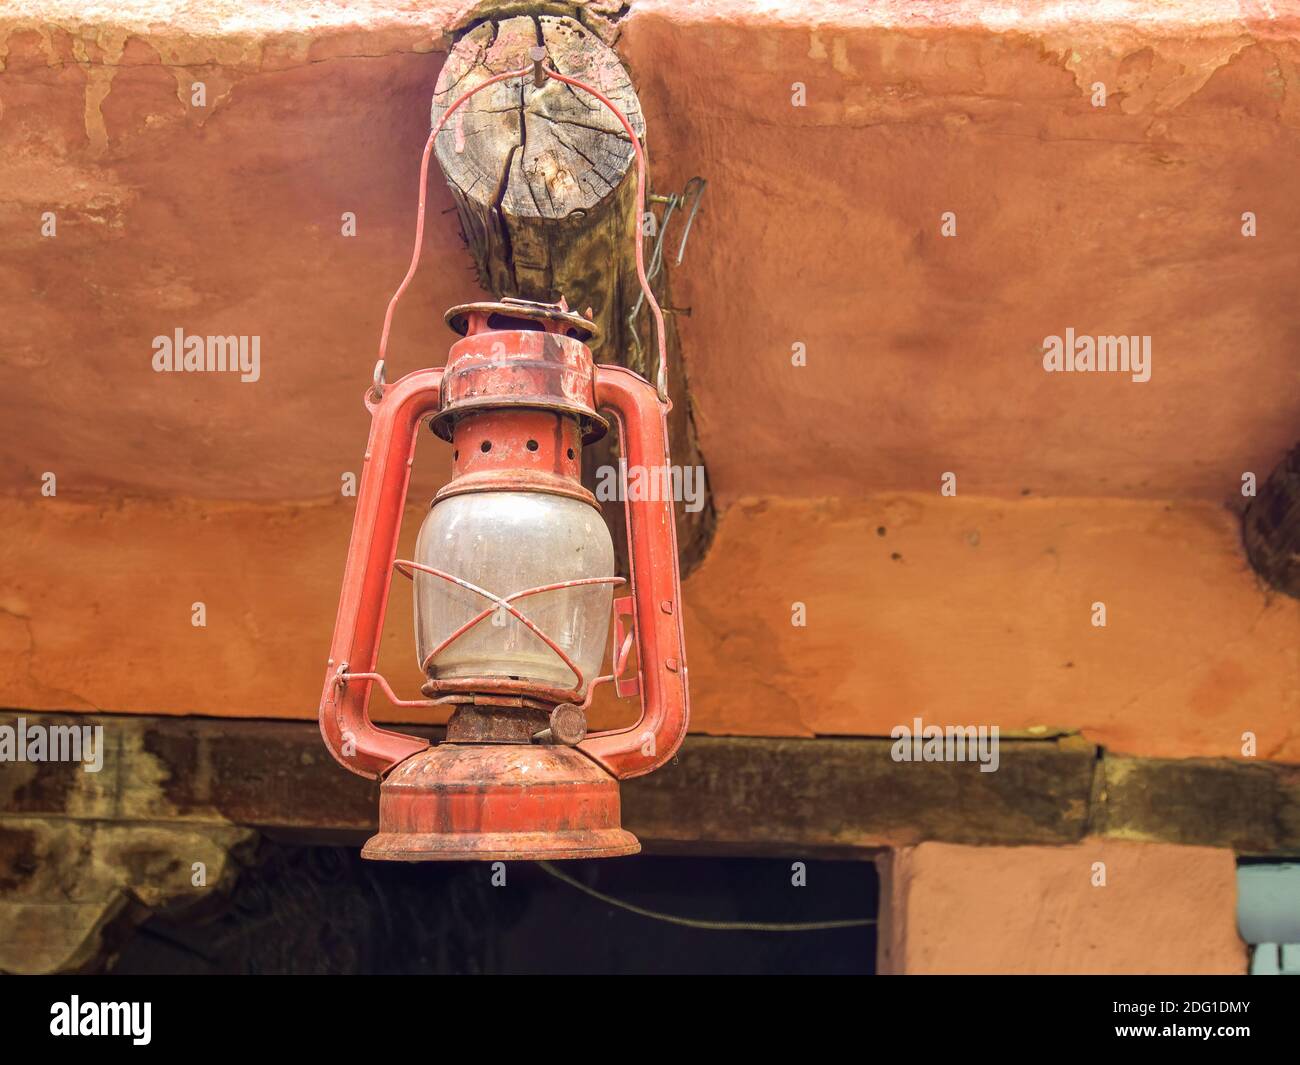 Lampe à huile de mineurs anciens accrochée à une poutre de bois dans une maison de la ville clonale de Villa de Leyva, dans le centre des montagnes andines de Colombie. Banque D'Images